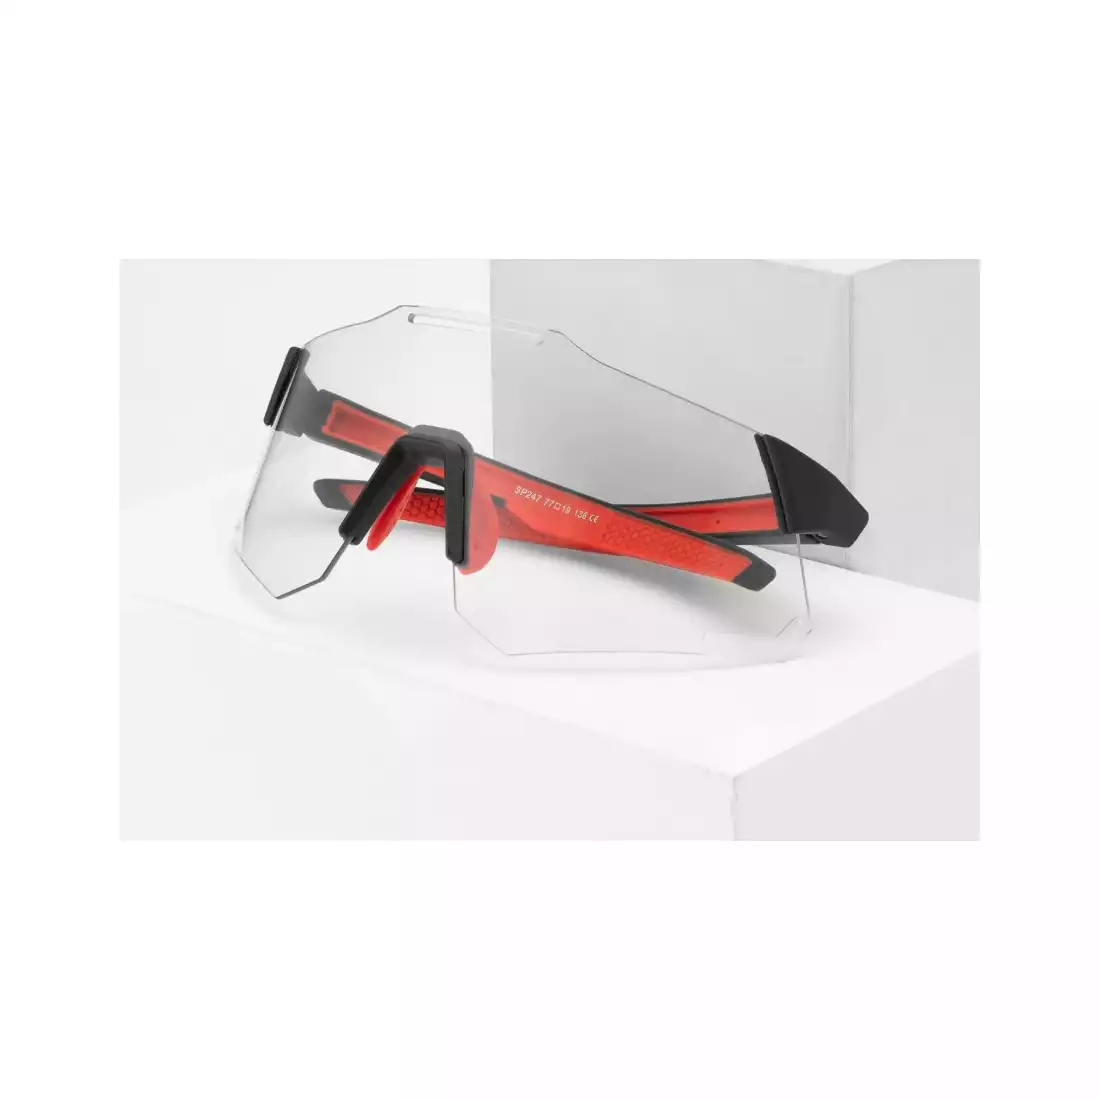 Rockbros 14110001002 Sportbrille mit Photochrom + Korrektureinsatz schwarz-rot